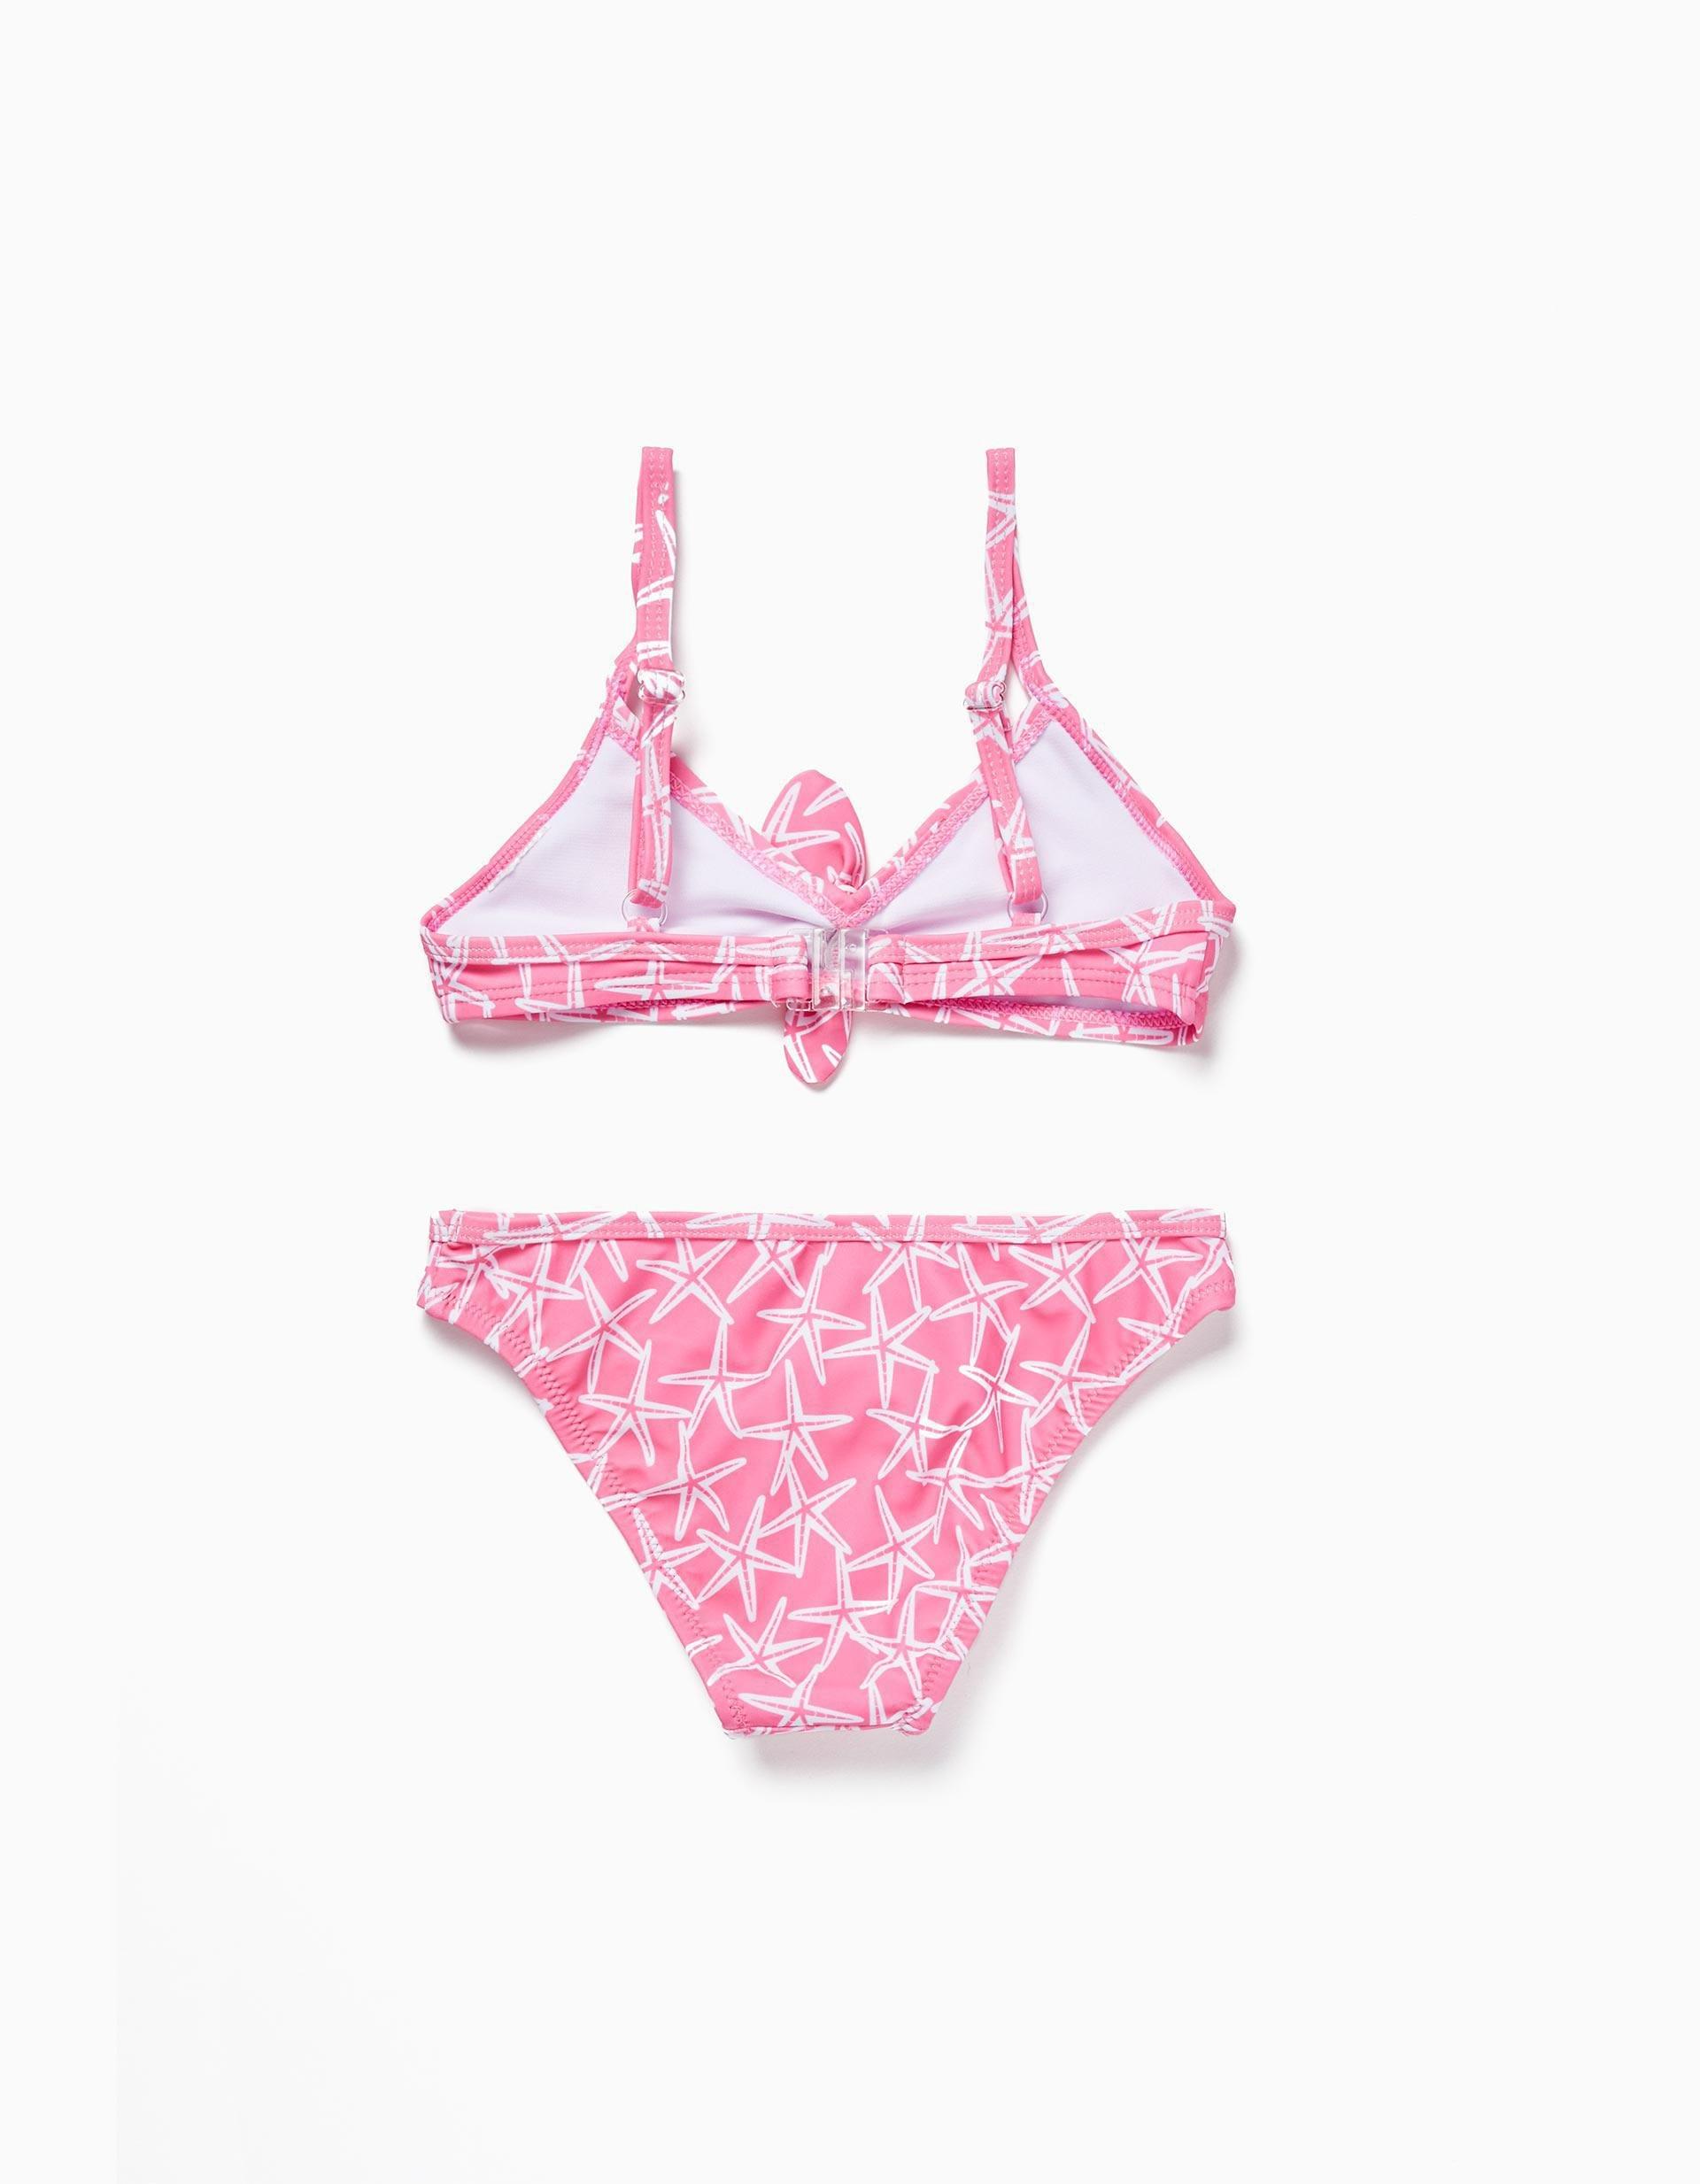 Gant - Pink Printed Swimsuit, Kids Girls